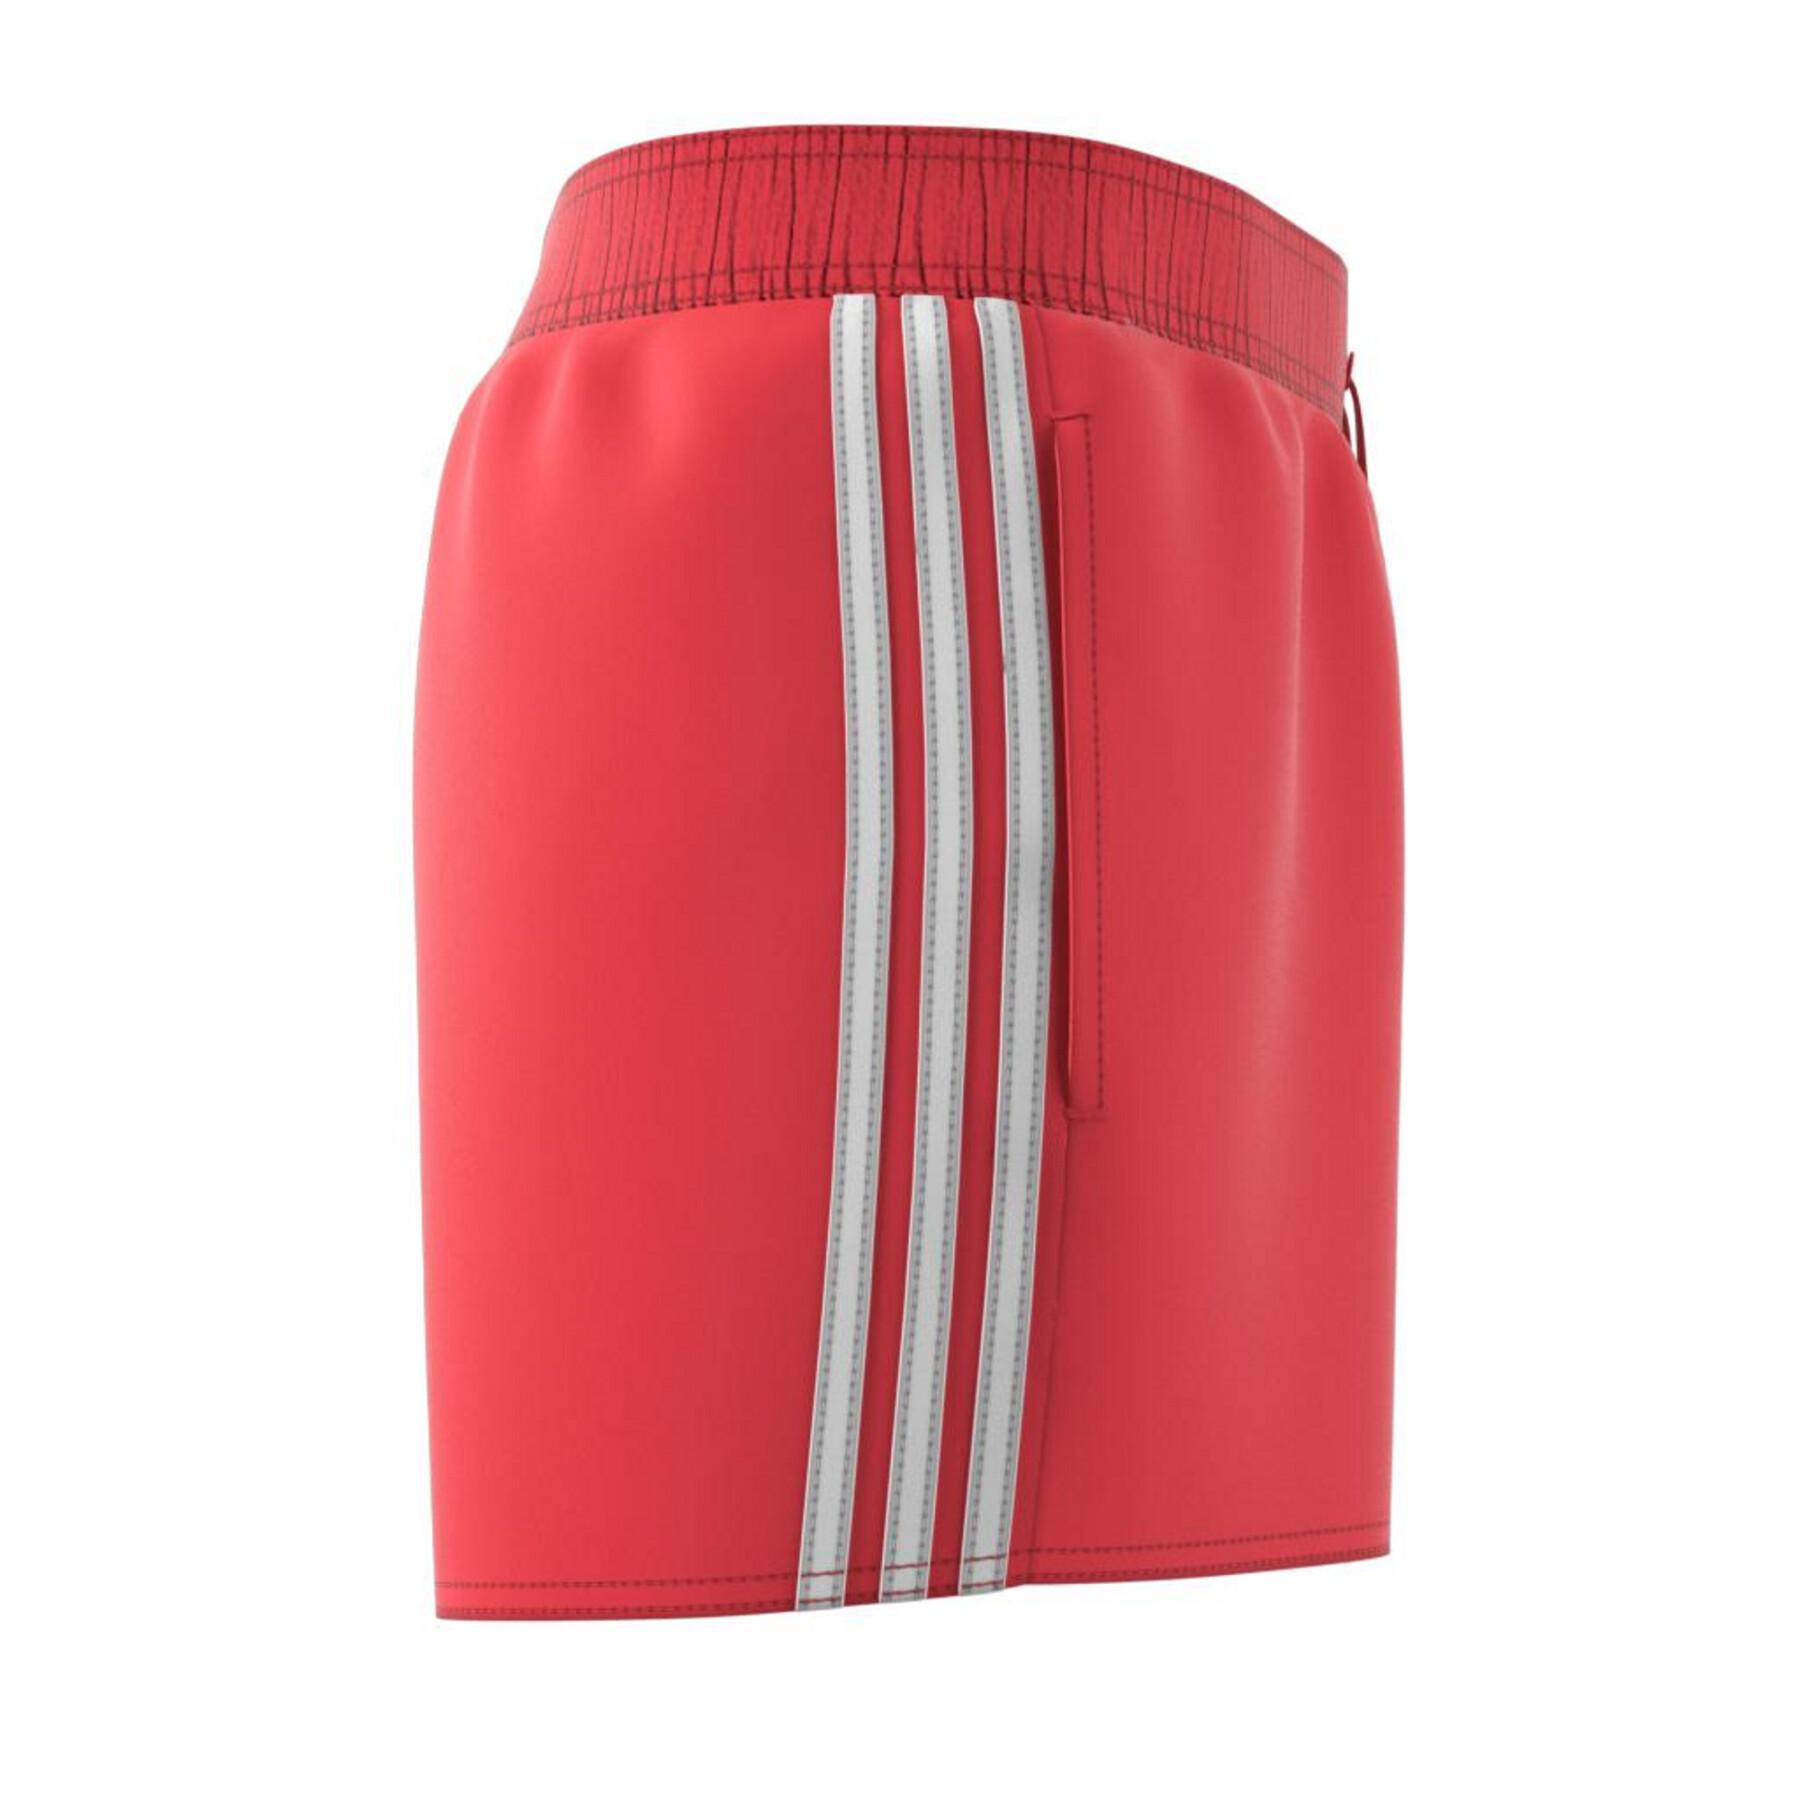 Pantalones cortos de natación Clx 3-Stripes